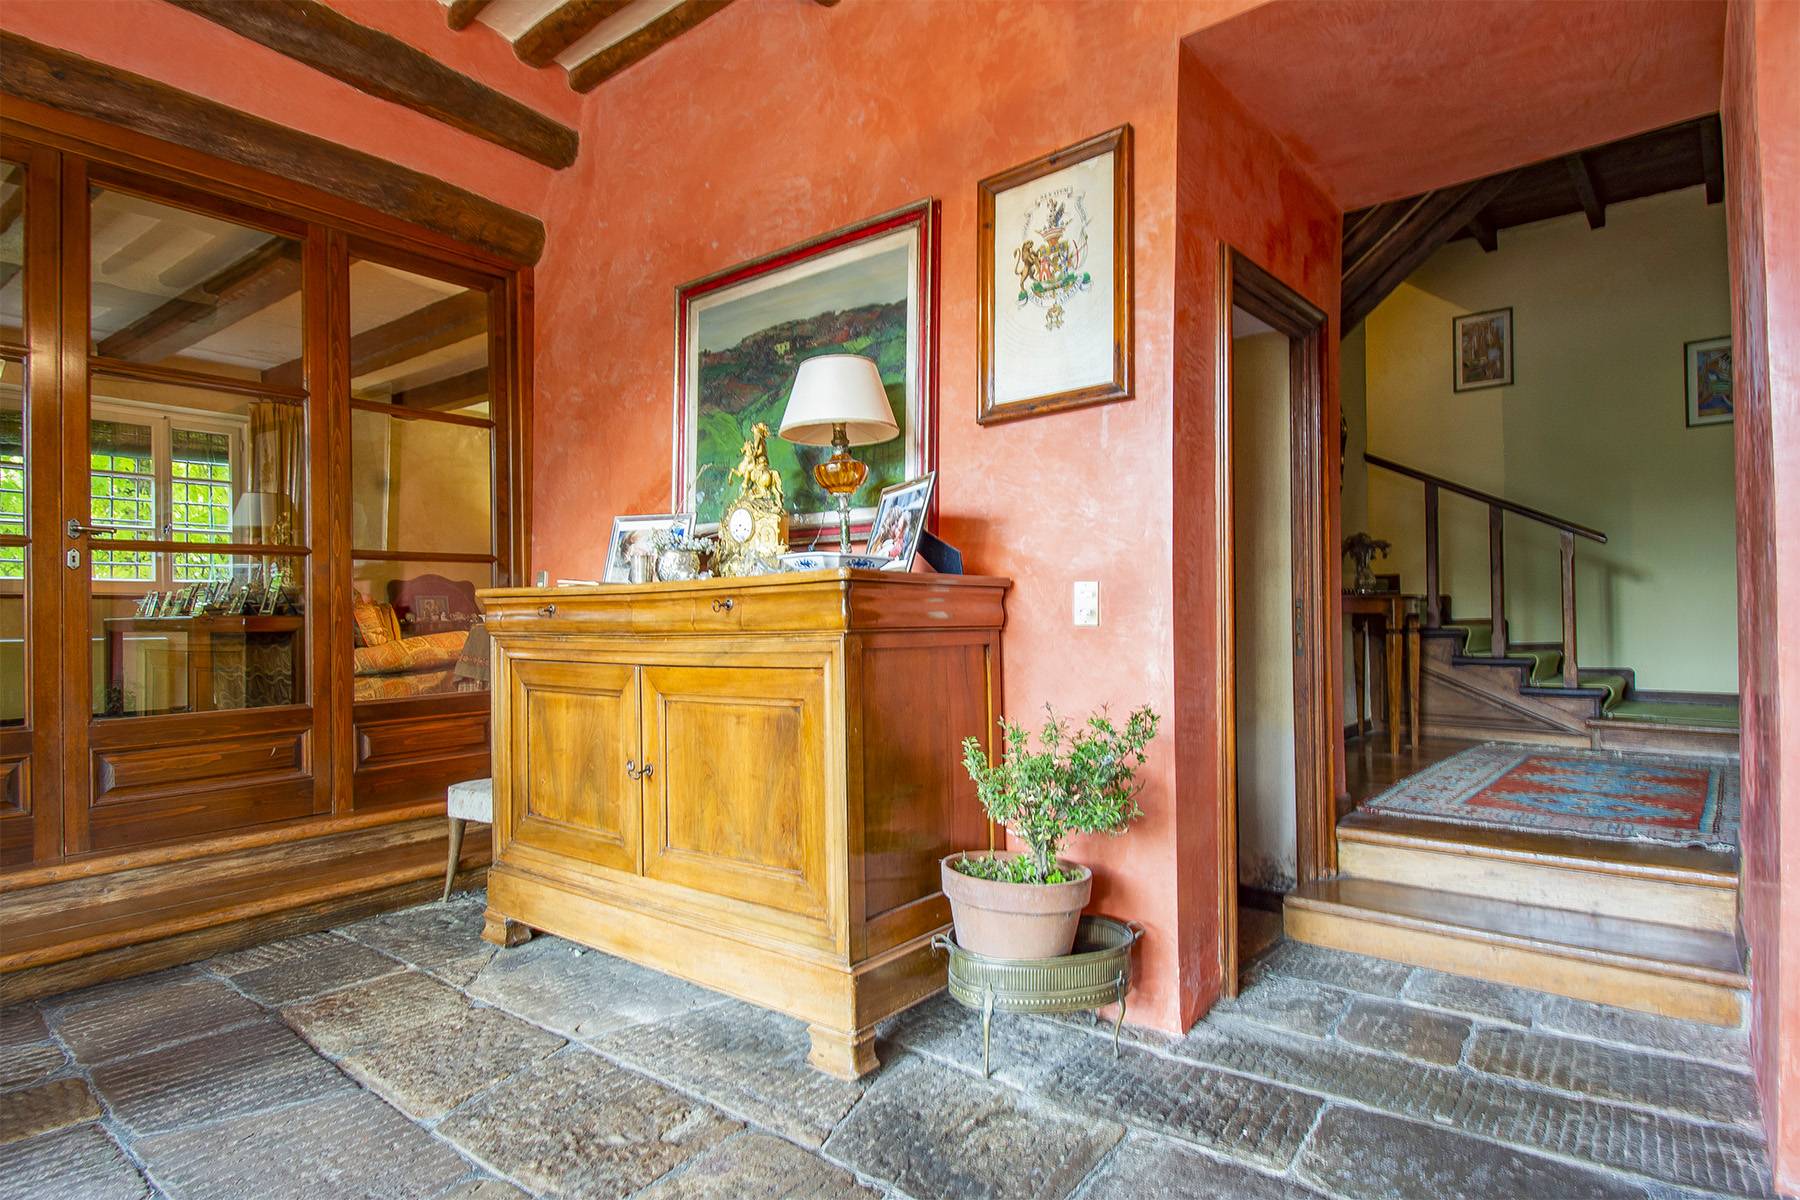 Casa indipendente in Vendita a Lucca: 5 locali, 500 mq - Foto 7